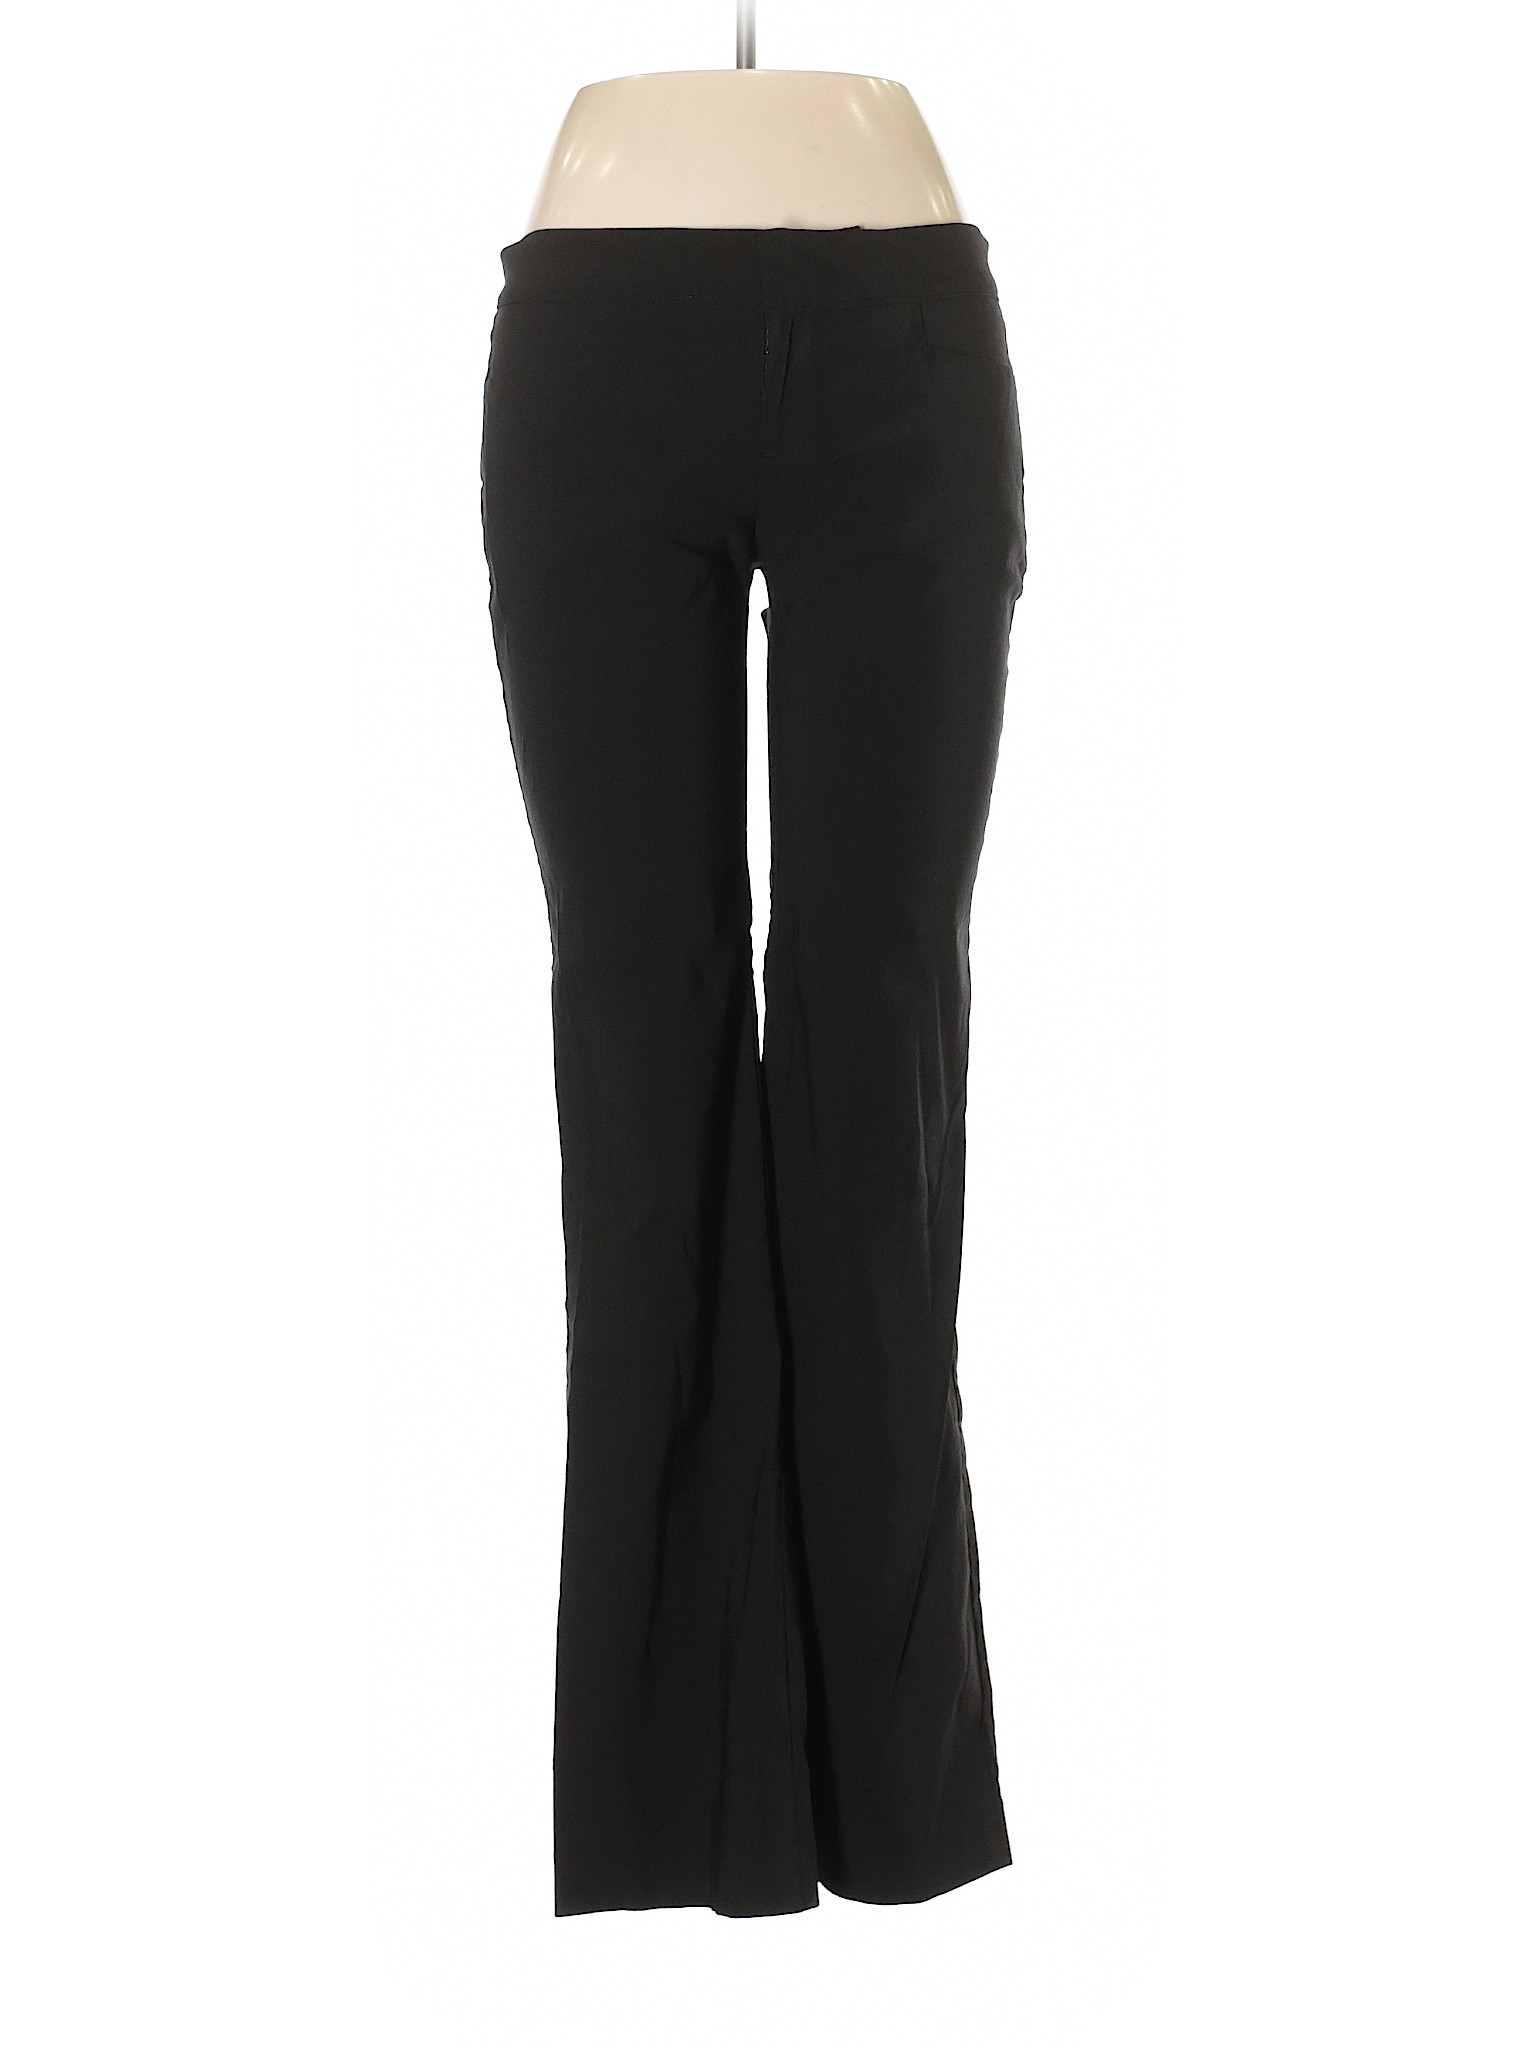 Guess Jeans Women Black Dress Pants 28W | eBay